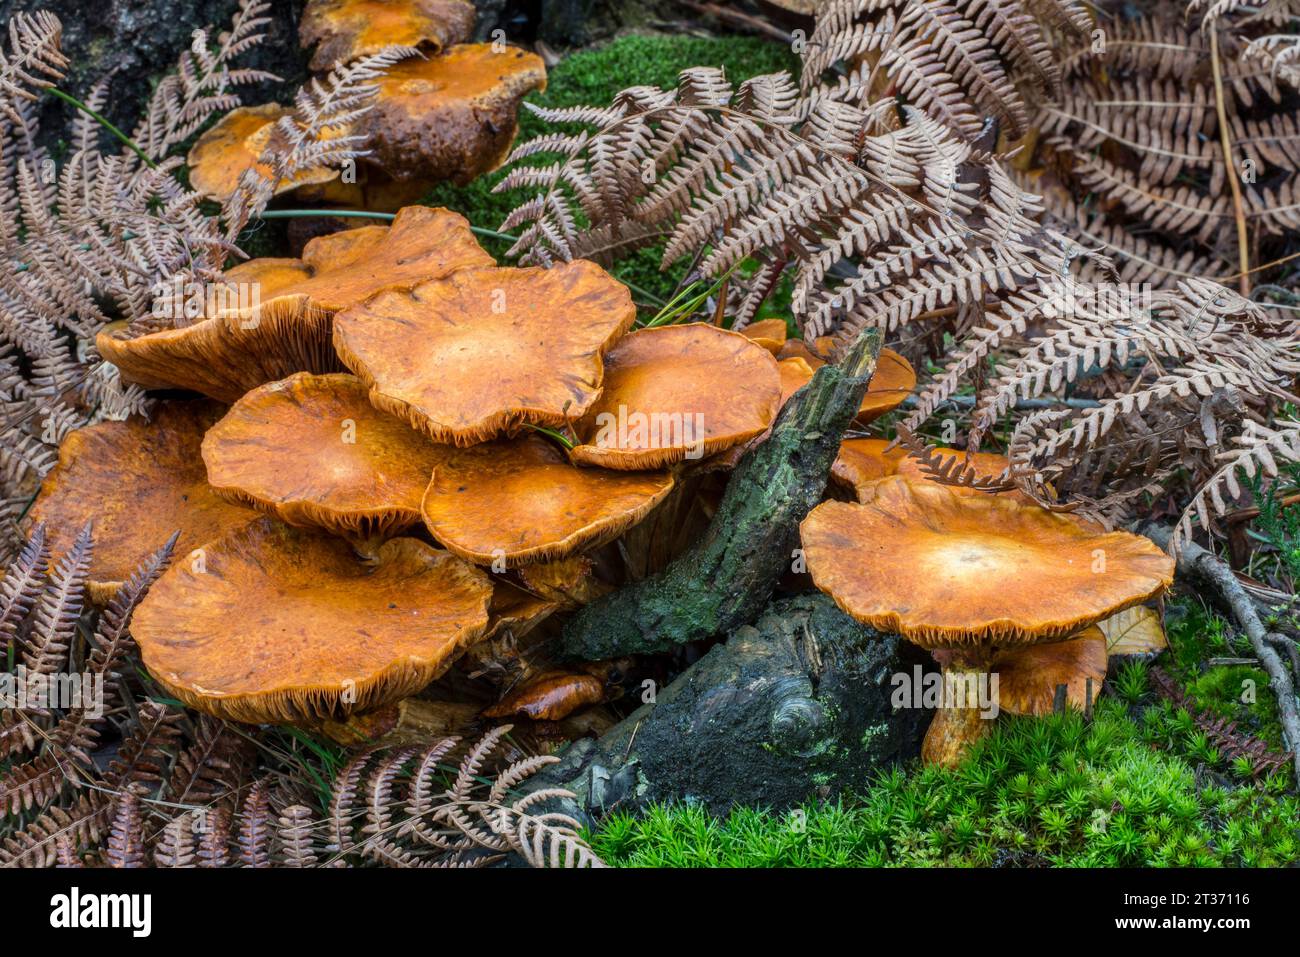 Spectacular rustgill / laughing gym mushroom (Gymnopilus junonius / Agaricus aureus / Agaricus junonius) in forest in autumn / fall Stock Photo